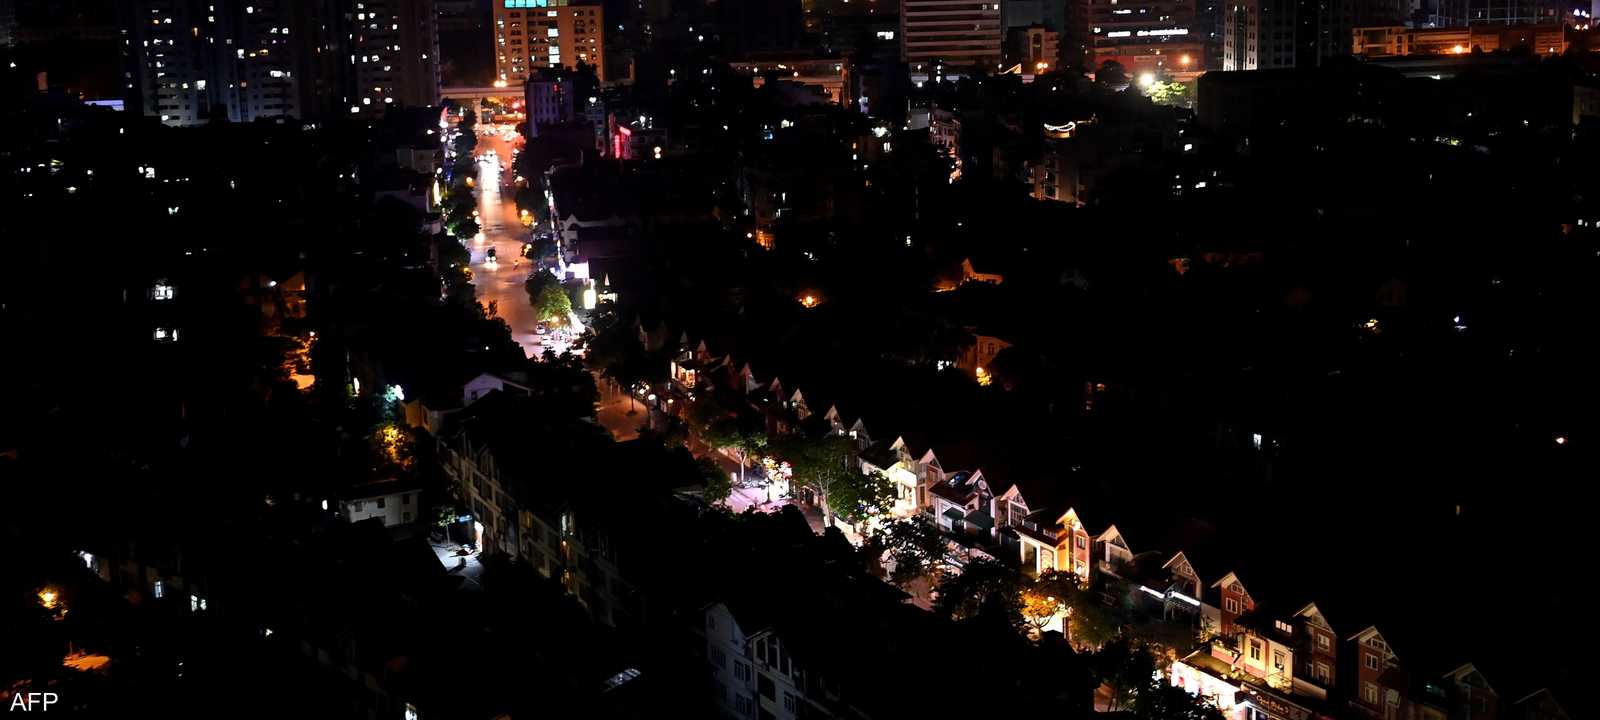 انقطاعات الكهرباء في مدينة هانوي عاصمة فيتنام